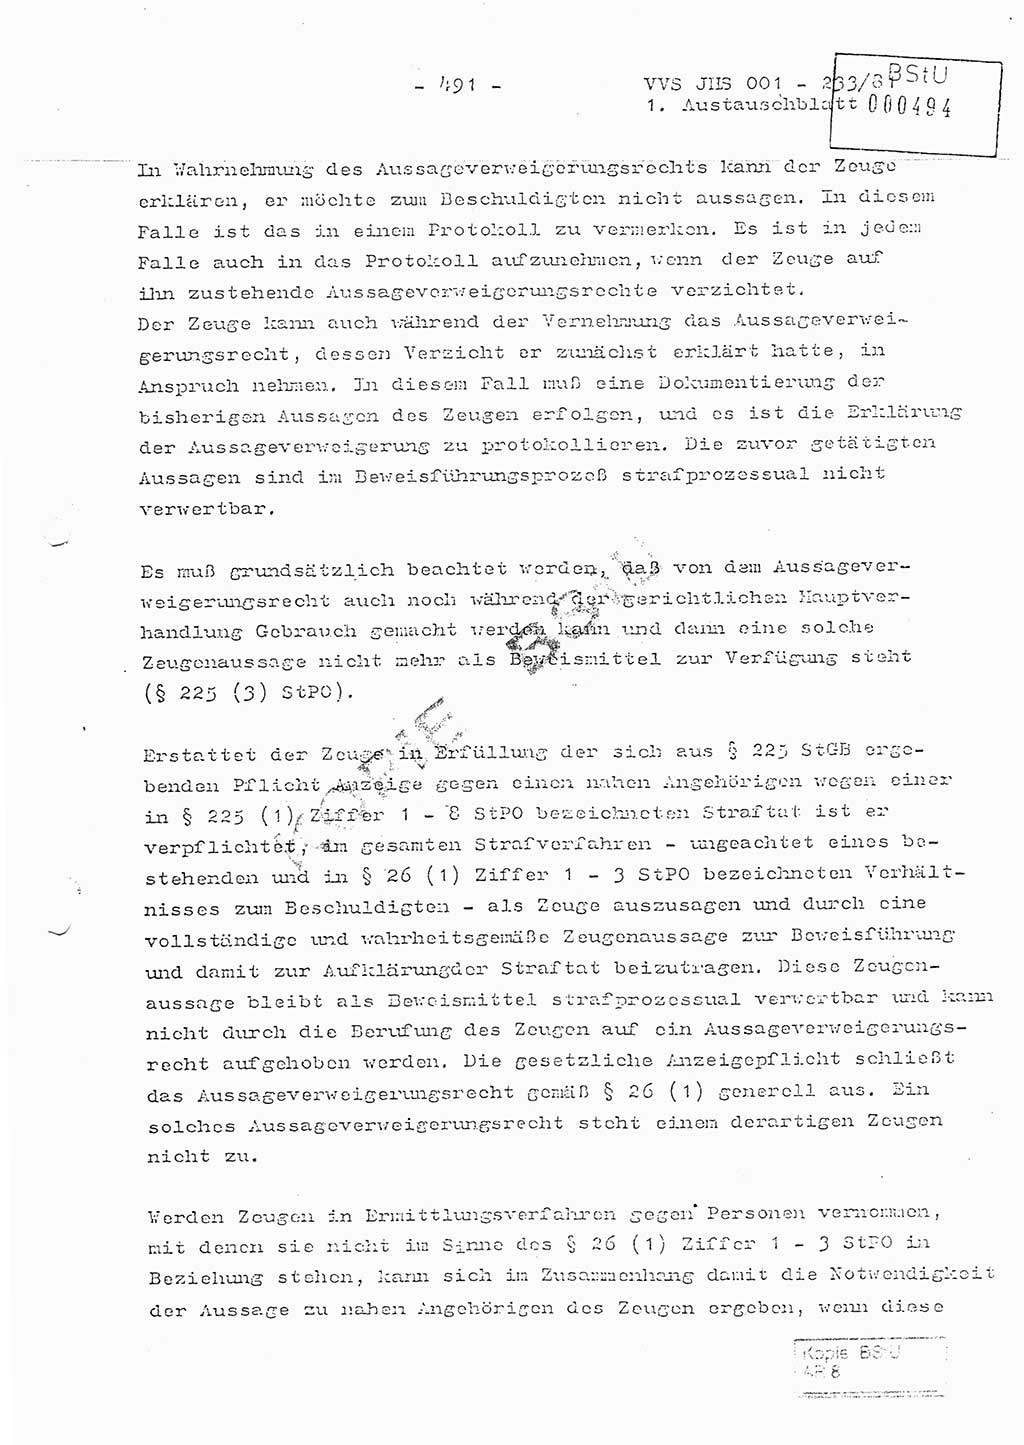 Dissertation Oberstleutnant Horst Zank (JHS), Oberstleutnant Dr. Karl-Heinz Knoblauch (JHS), Oberstleutnant Gustav-Adolf Kowalewski (HA Ⅸ), Oberstleutnant Wolfgang Plötner (HA Ⅸ), Ministerium für Staatssicherheit (MfS) [Deutsche Demokratische Republik (DDR)], Juristische Hochschule (JHS), Vertrauliche Verschlußsache (VVS) o001-233/81, Potsdam 1981, Blatt 491 (Diss. MfS DDR JHS VVS o001-233/81 1981, Bl. 491)